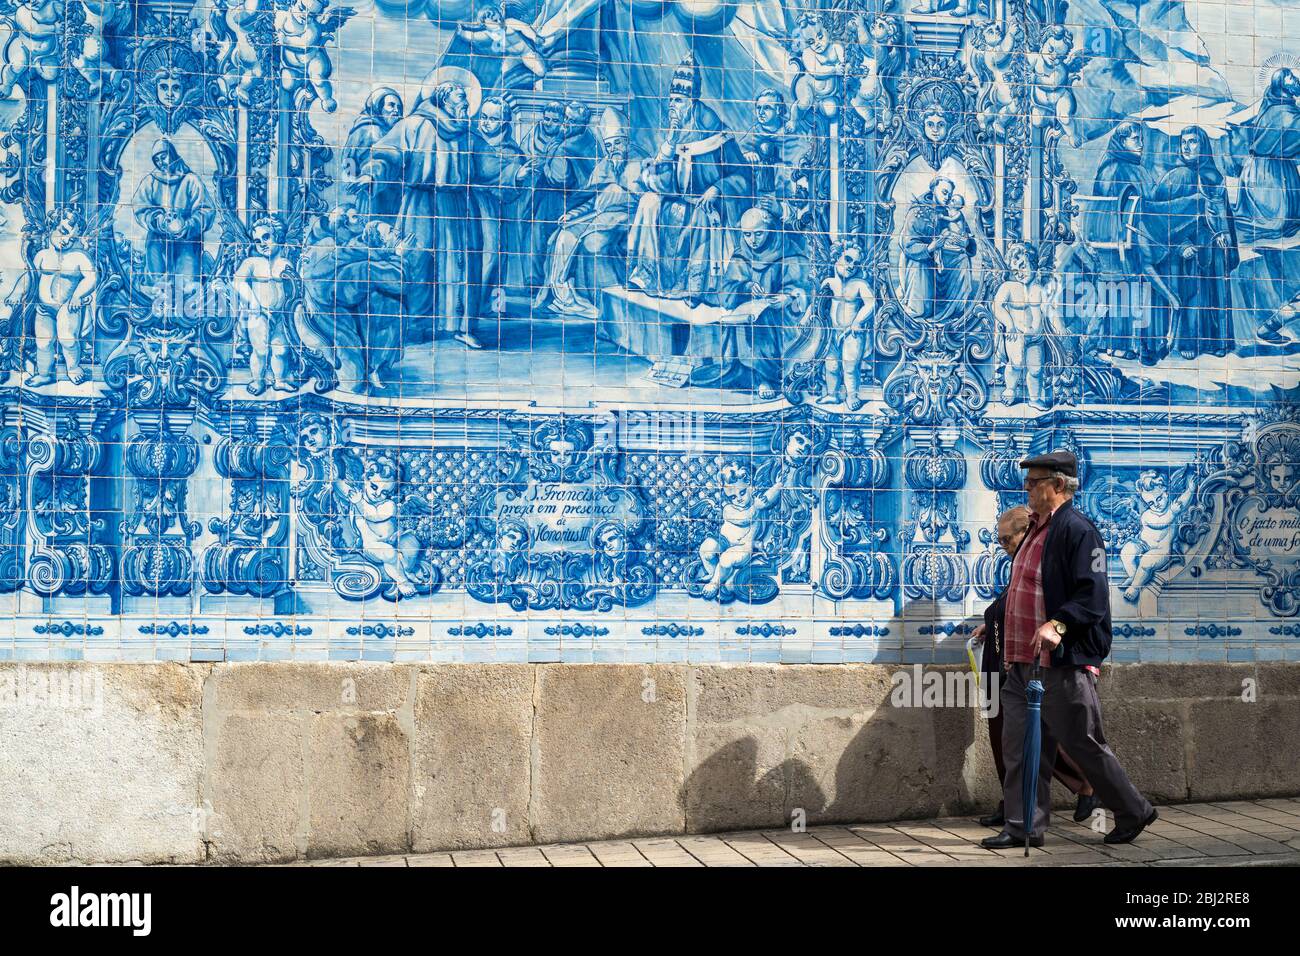 Gente pasando Azulejos portugueses azul y blanco pared de azulejos de Capela das almas de Santa Catarina - Capilla de Santa Catalina en Oporto, Portugal Foto de stock